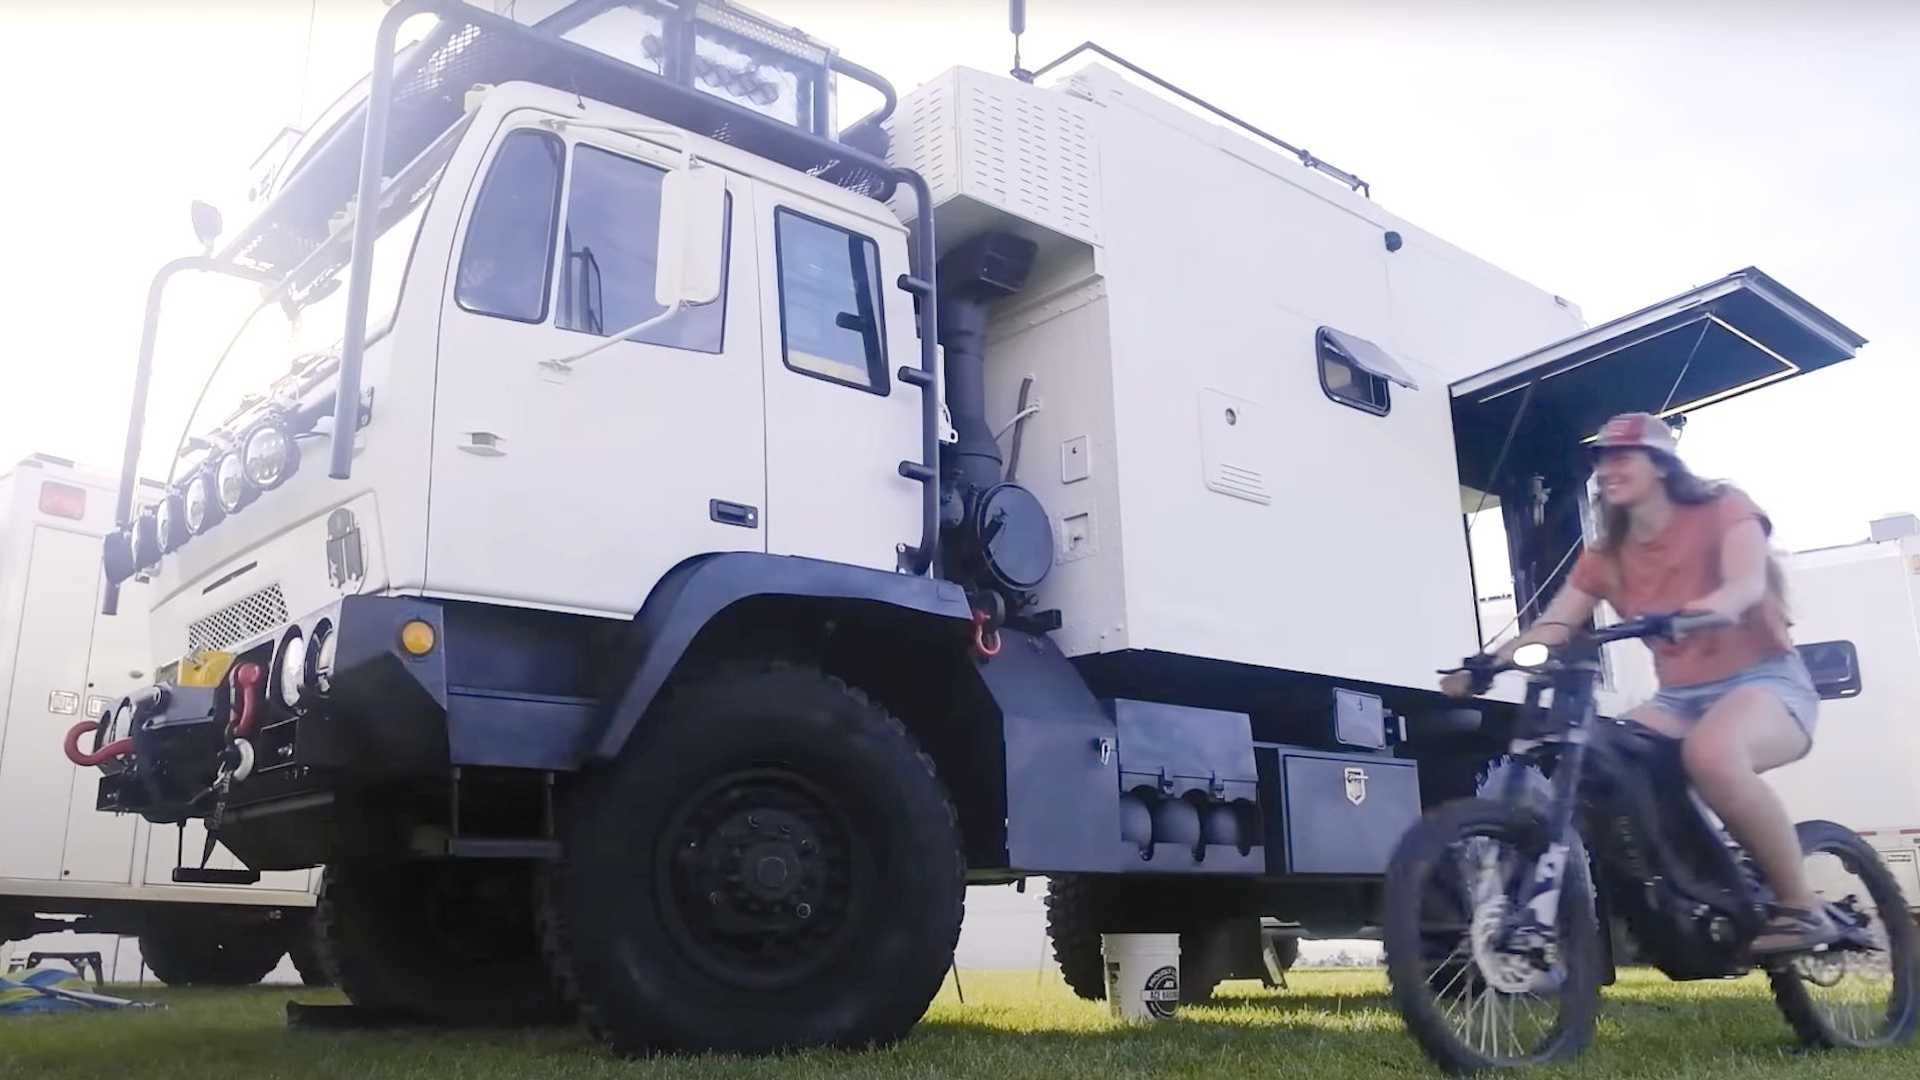 Vehículos militares convertidos en campers de bricolaje listos para cualquier cosa